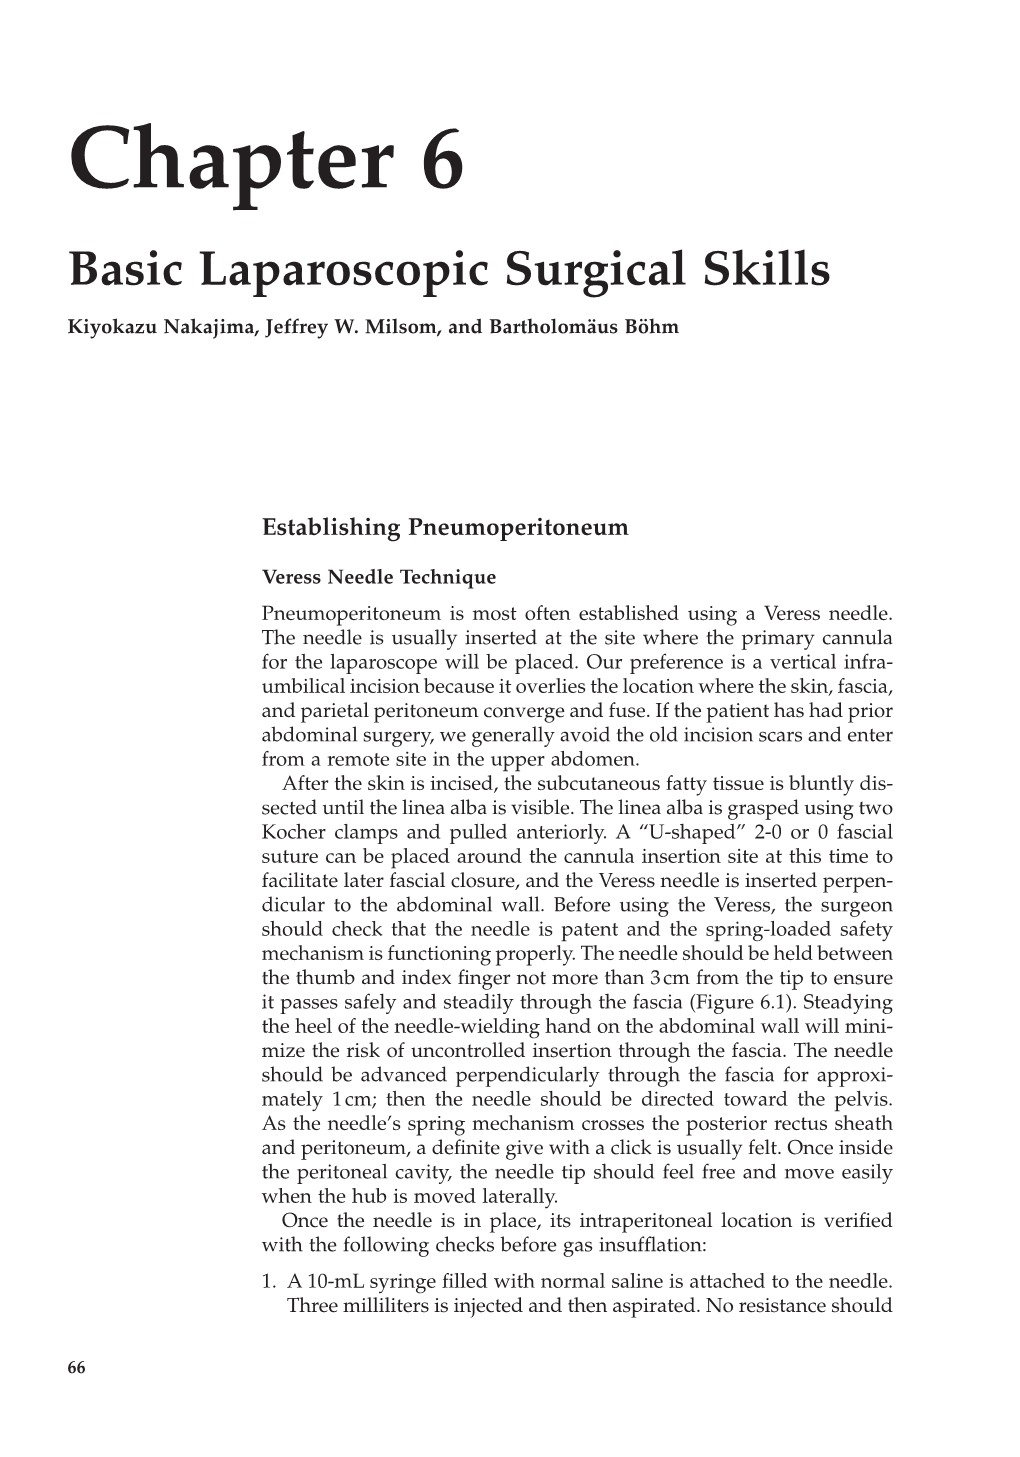 Chapter 6 Basic Laparoscopic Surgical Skills